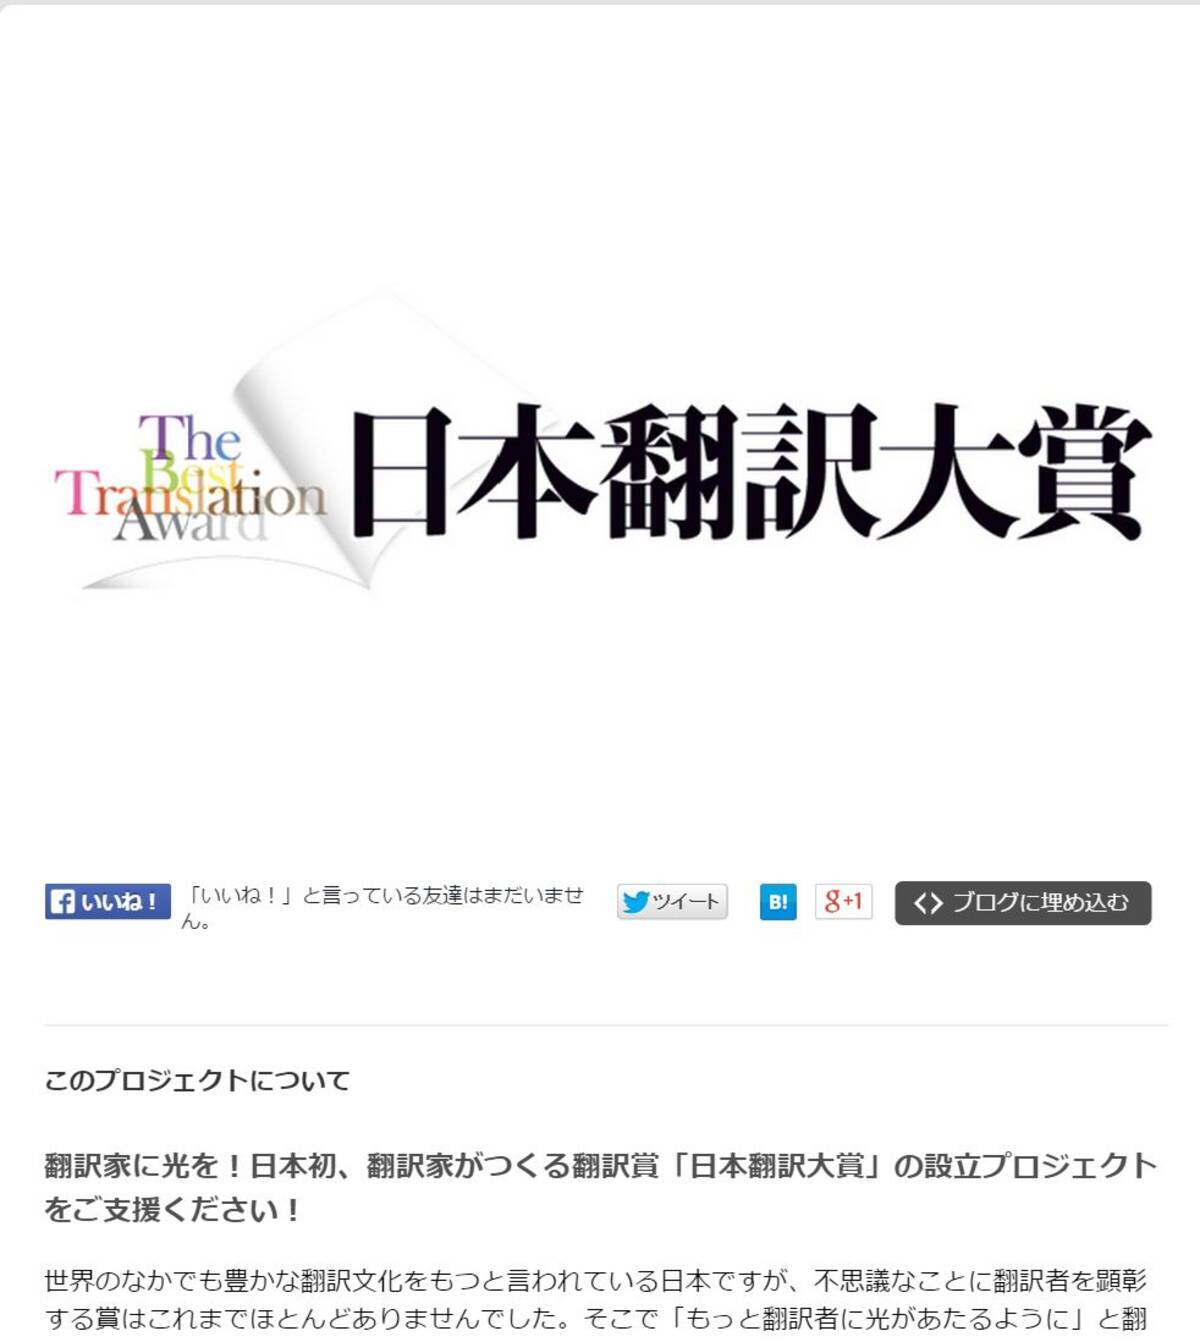 有名翻訳家が選ぶ本当に面白い翻訳小説 日本翻訳大賞 起動 エキサイトニュース